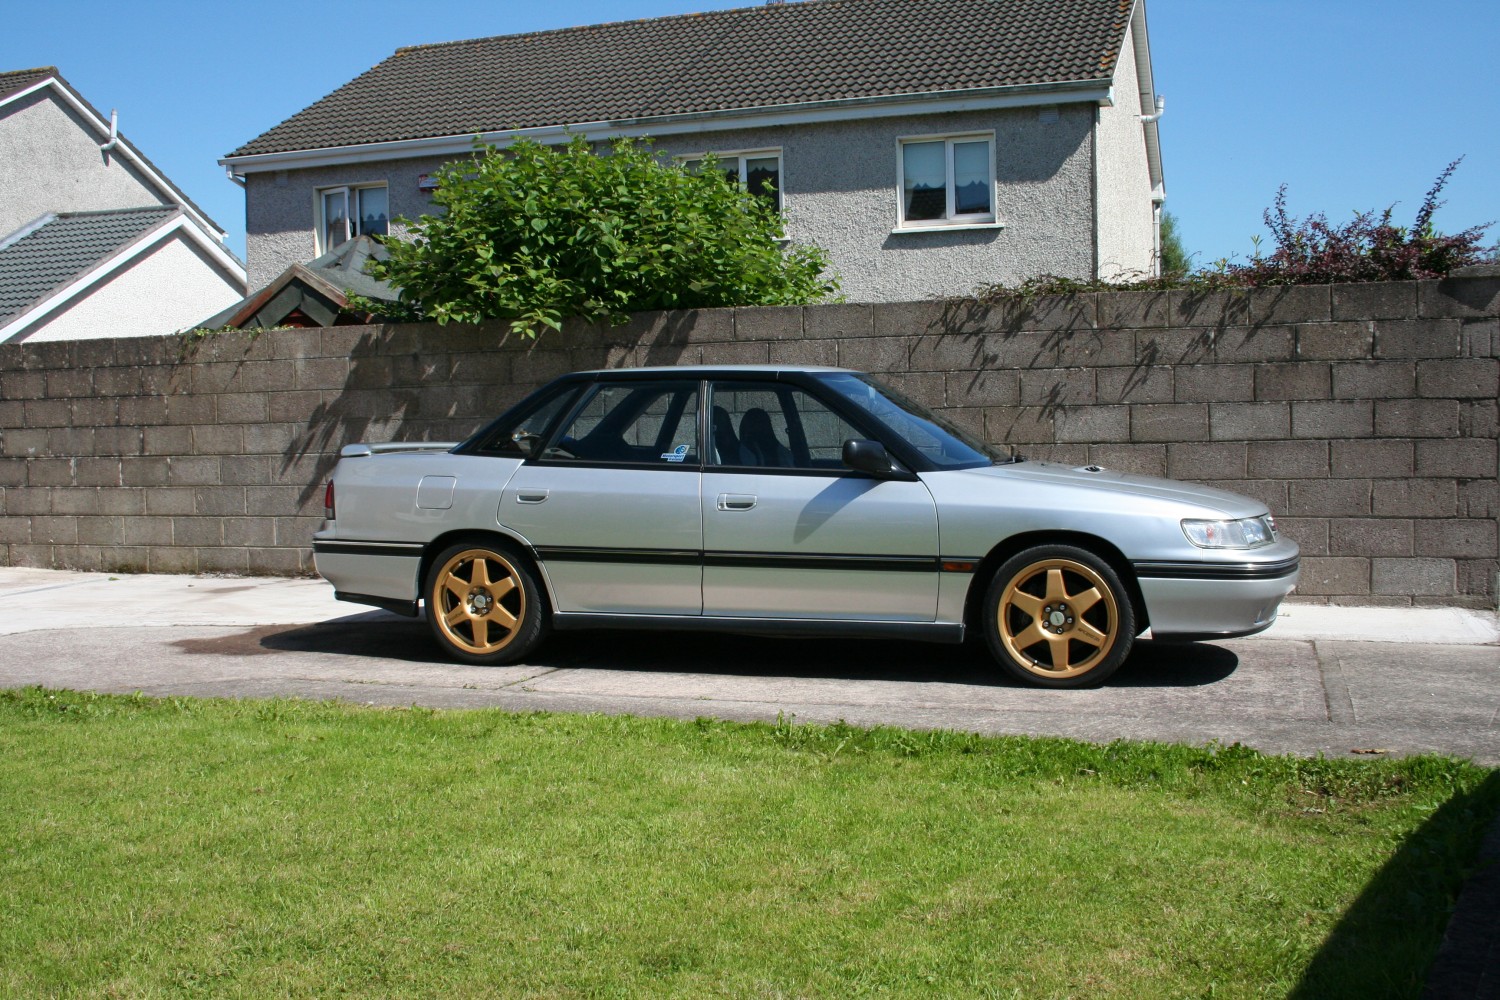 1992 Subaru legacy rs - johnnyrs - Shannons Club